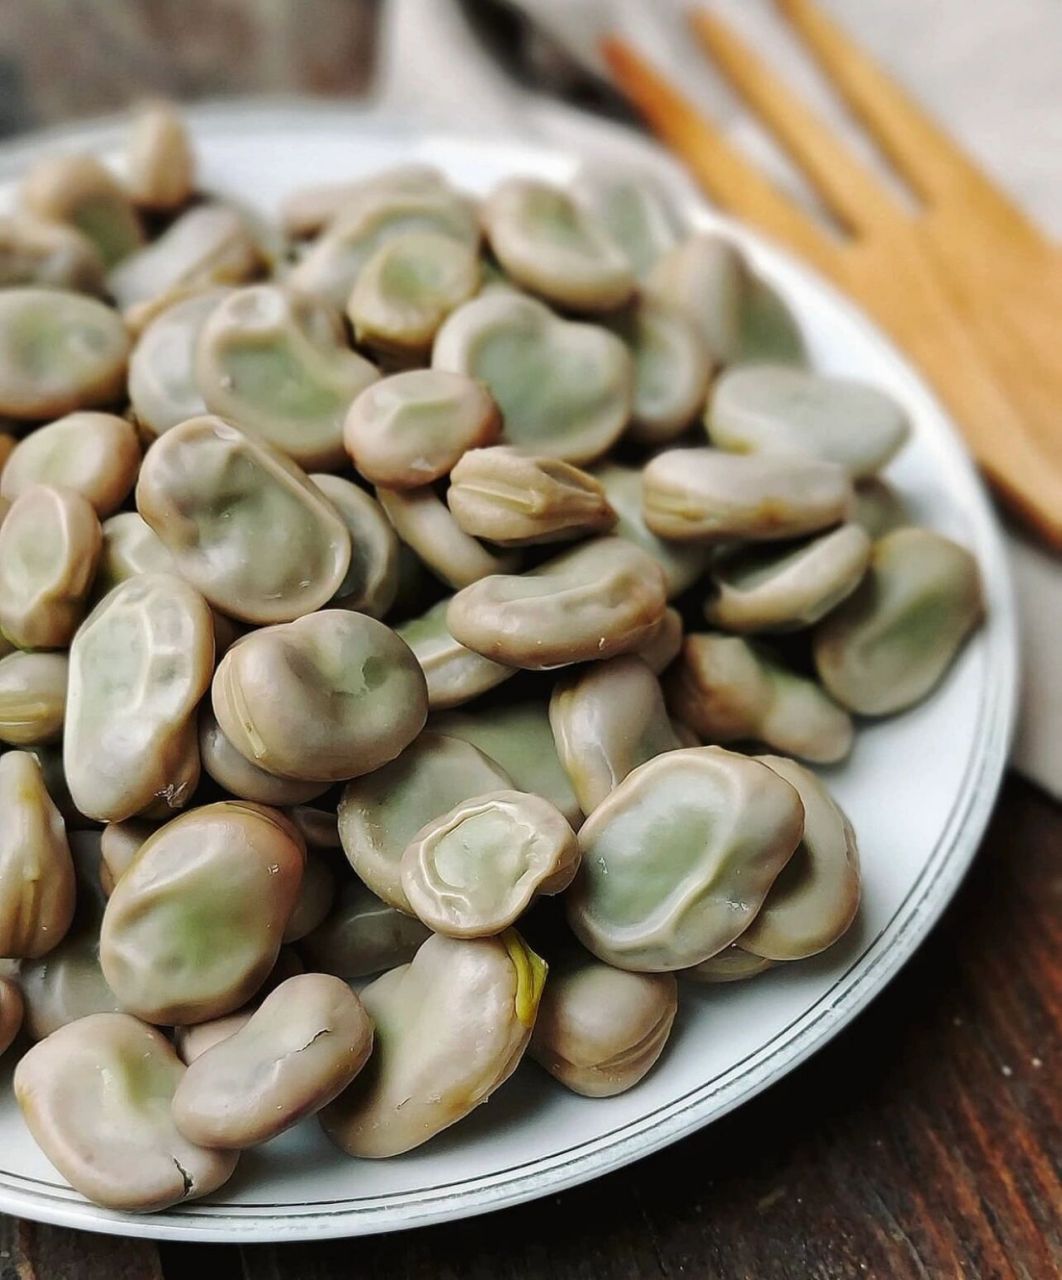 蚕豆,又名胡豆,佛豆,一般认为起源于西南亚和北非